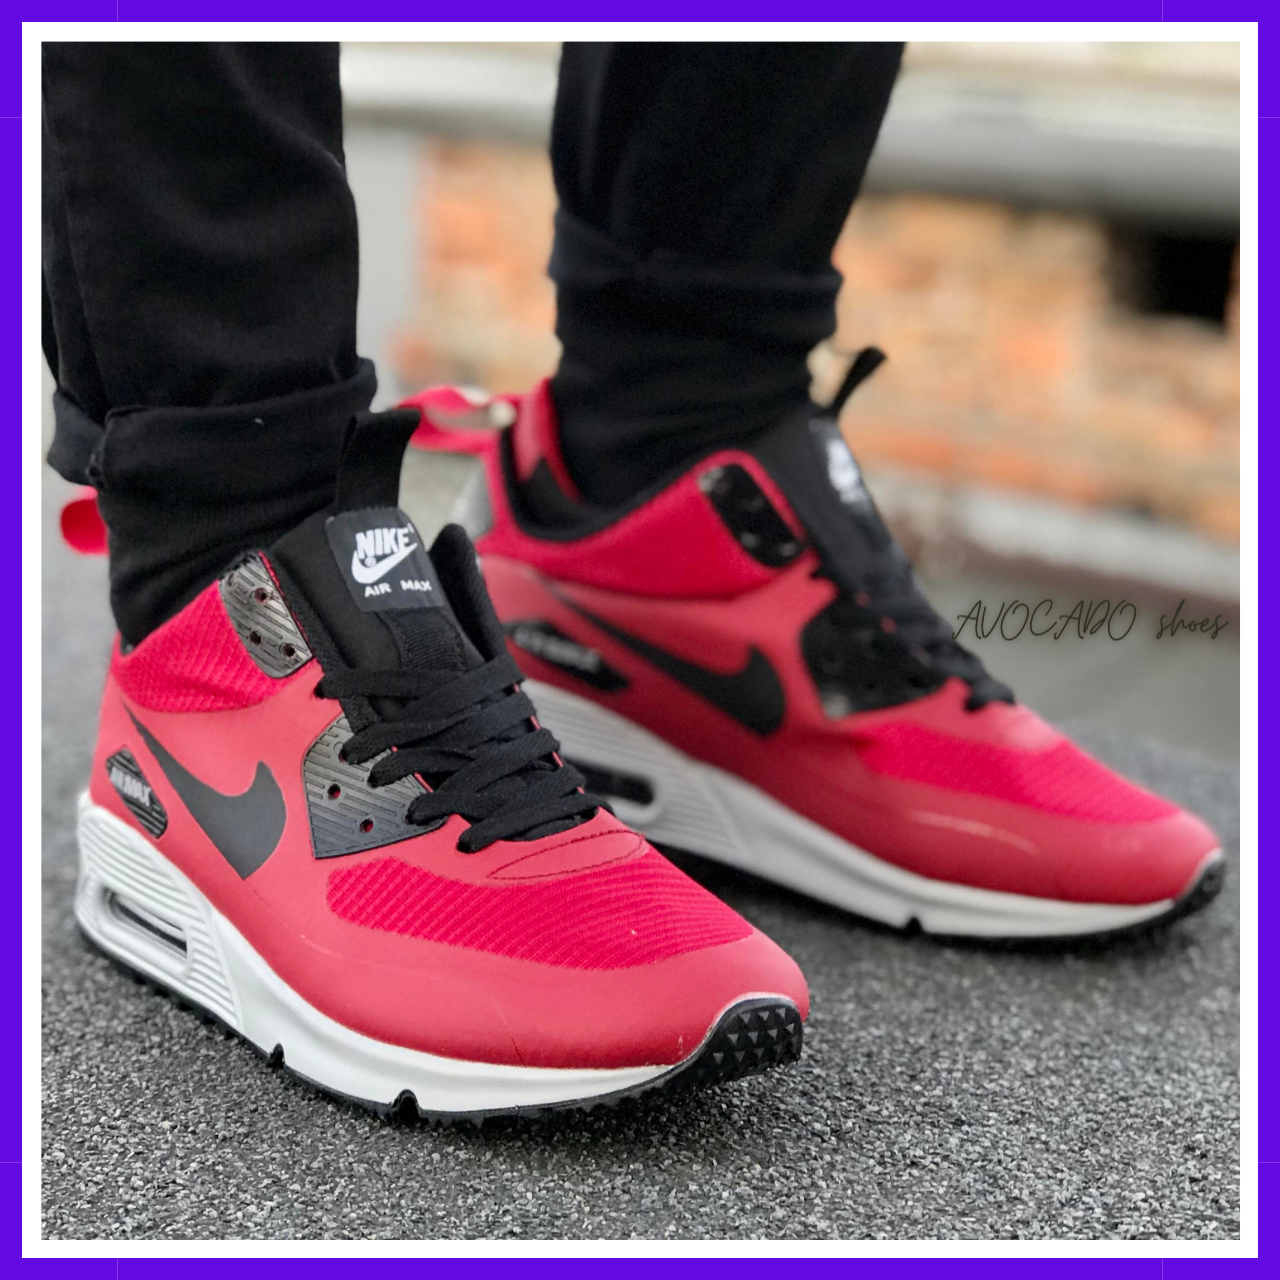 Кросівки зимові чоловічі Nike Air Max 90 Mid red термо/Найк аїр макс 90 міді червоні